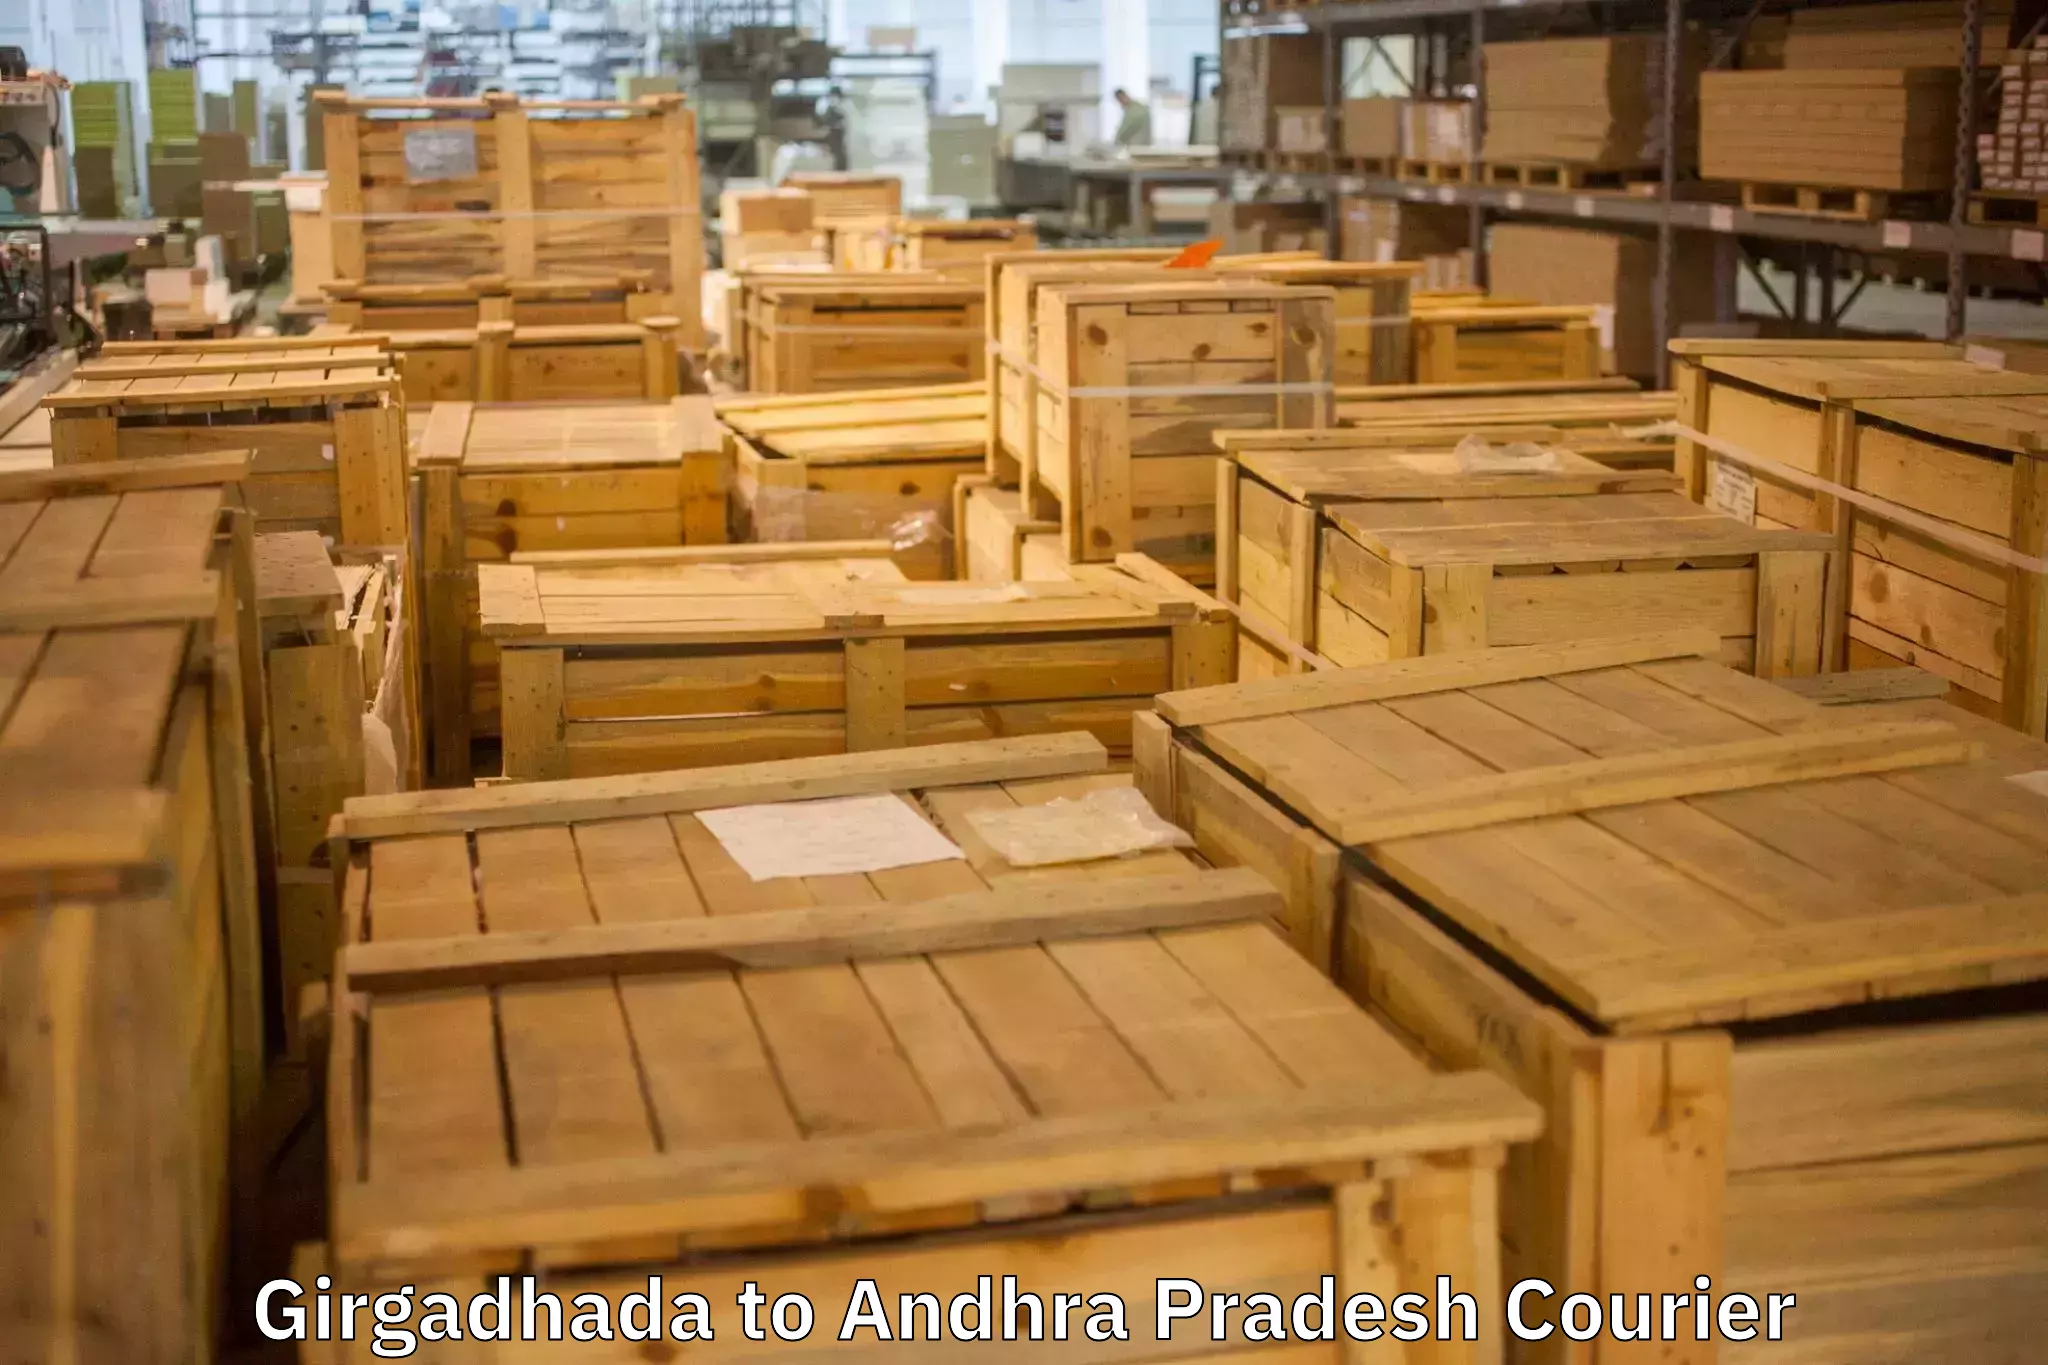 Professional furniture movers Girgadhada to Adoni